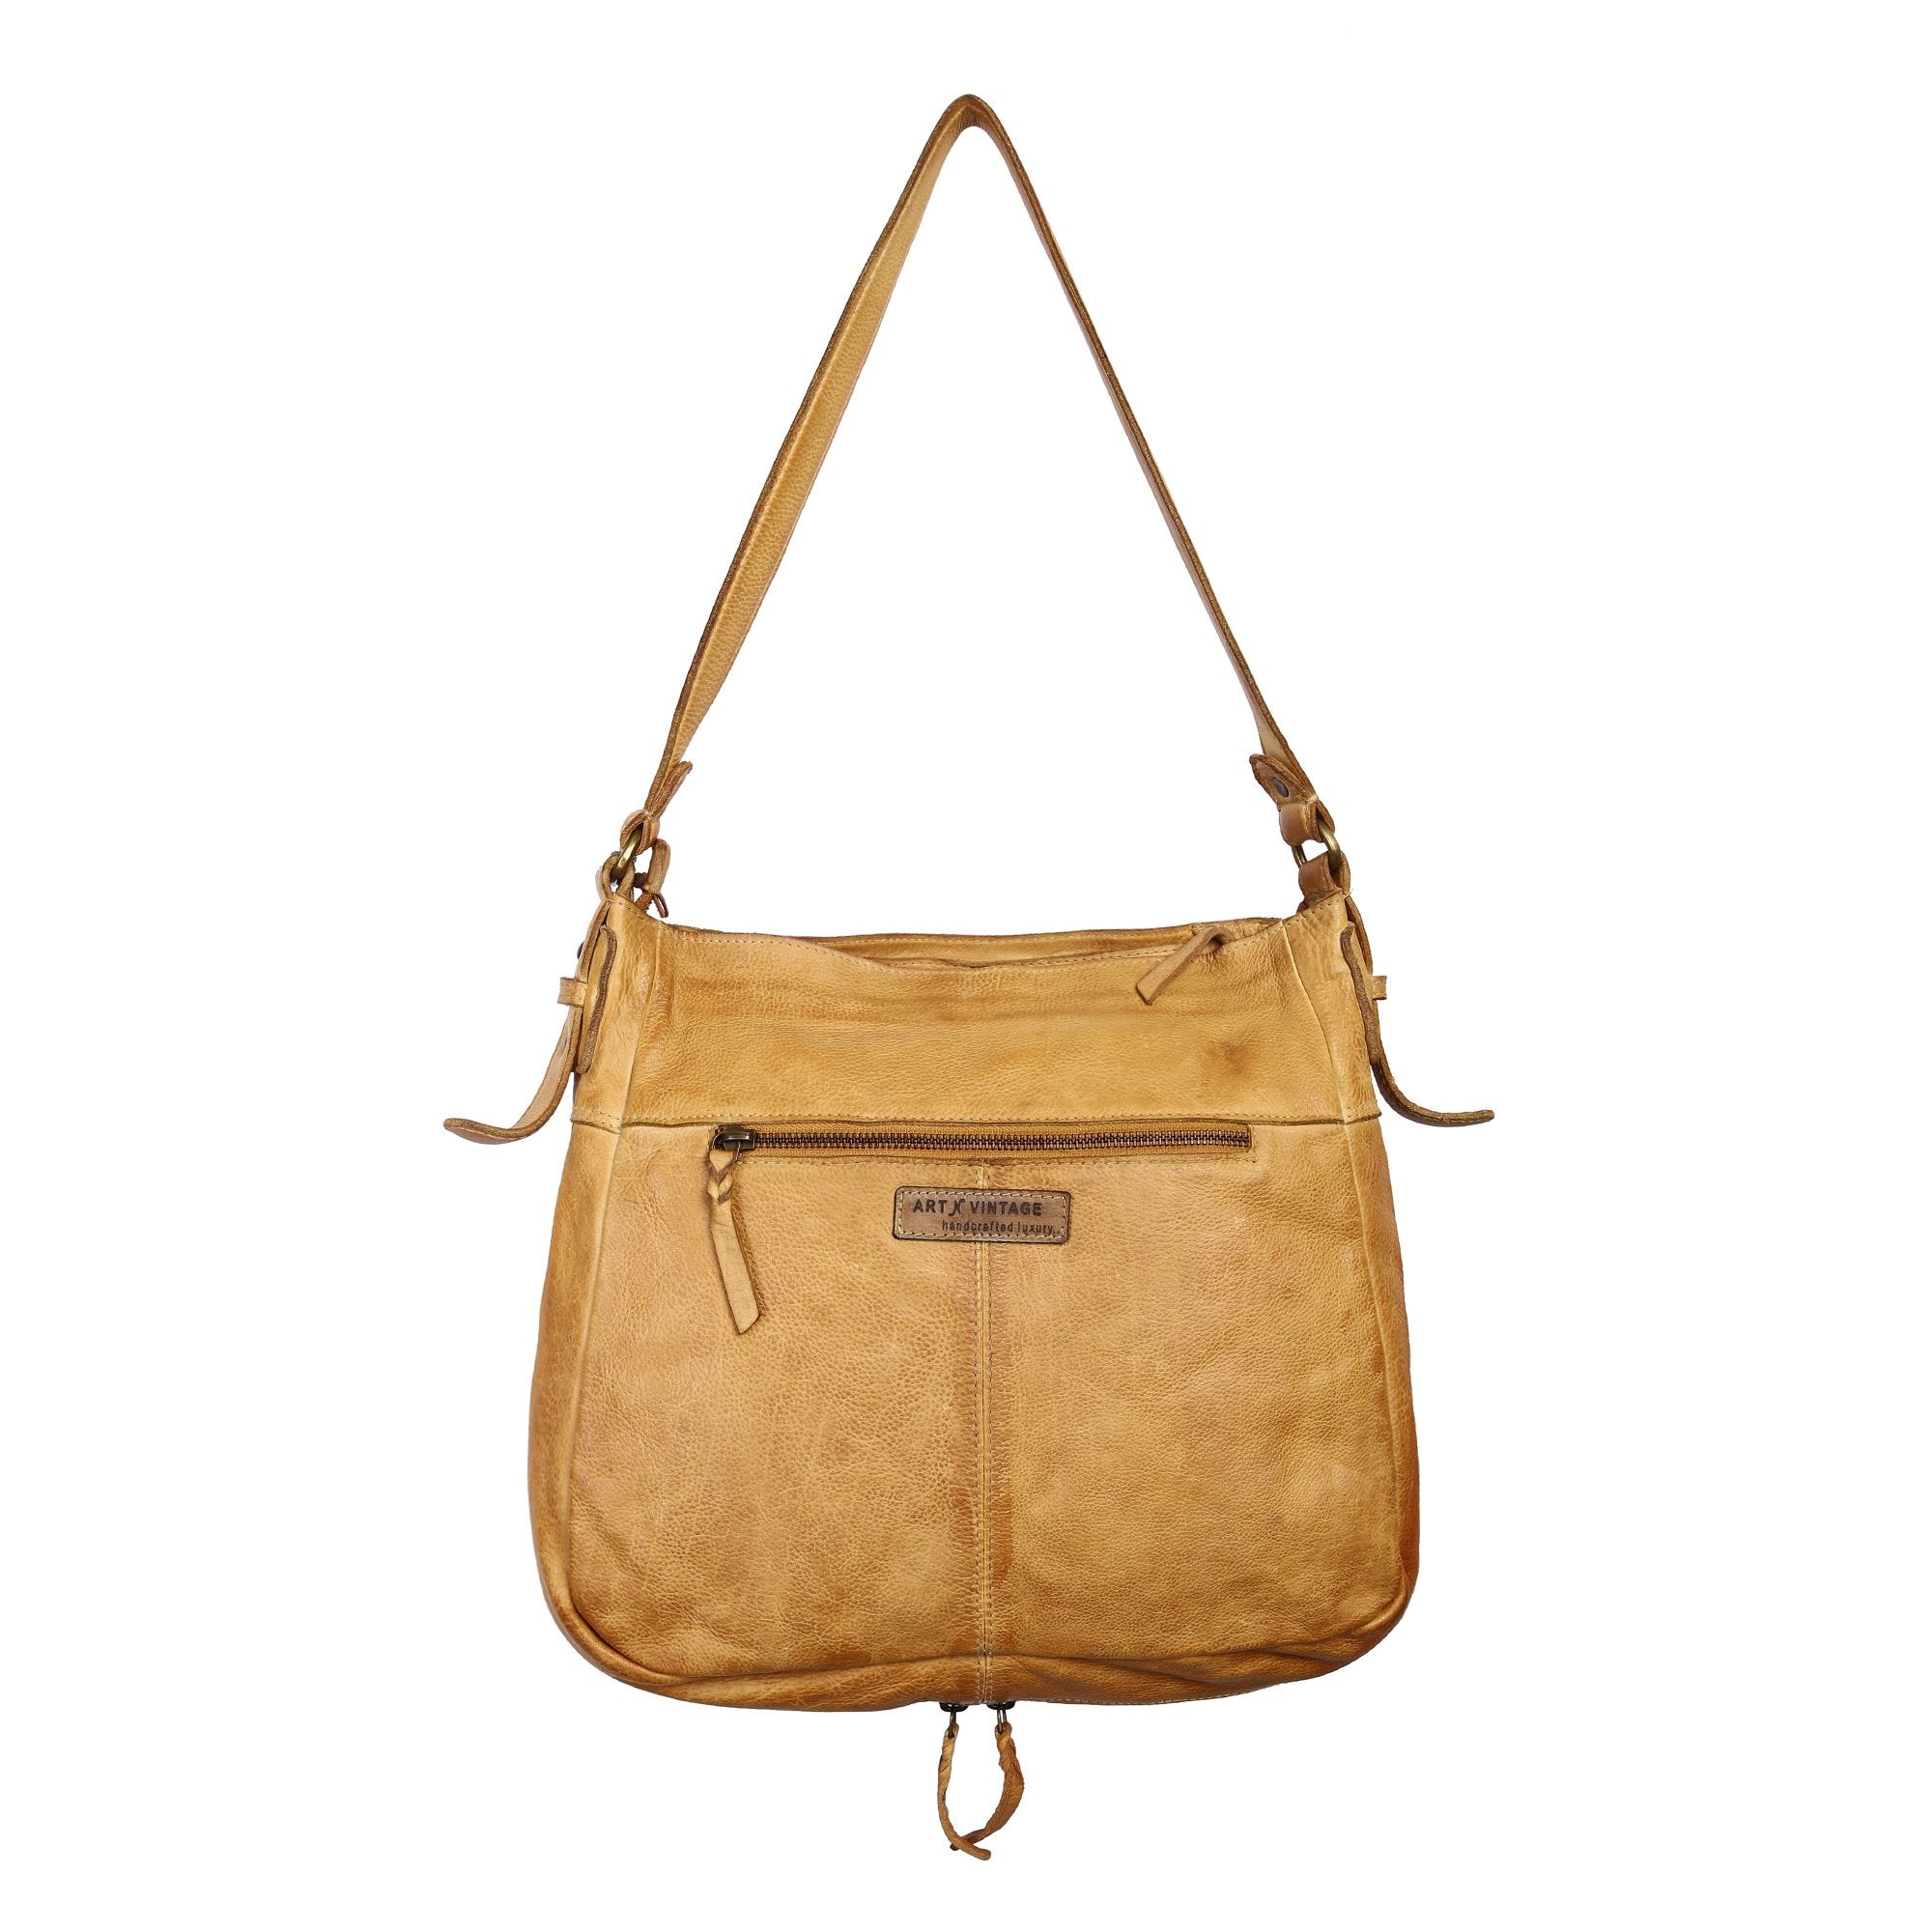 Tesoro Designer Bag: Yellow leather shoulder bag with rivet deatil by Art N Vintage